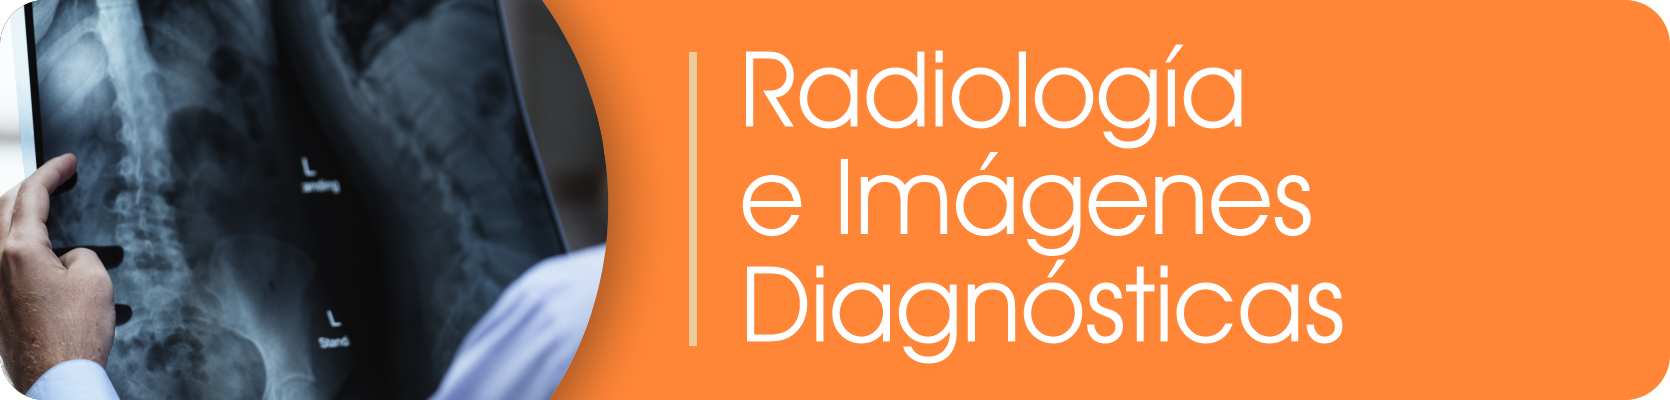 Banner Radiología e imágenes diagnósticas